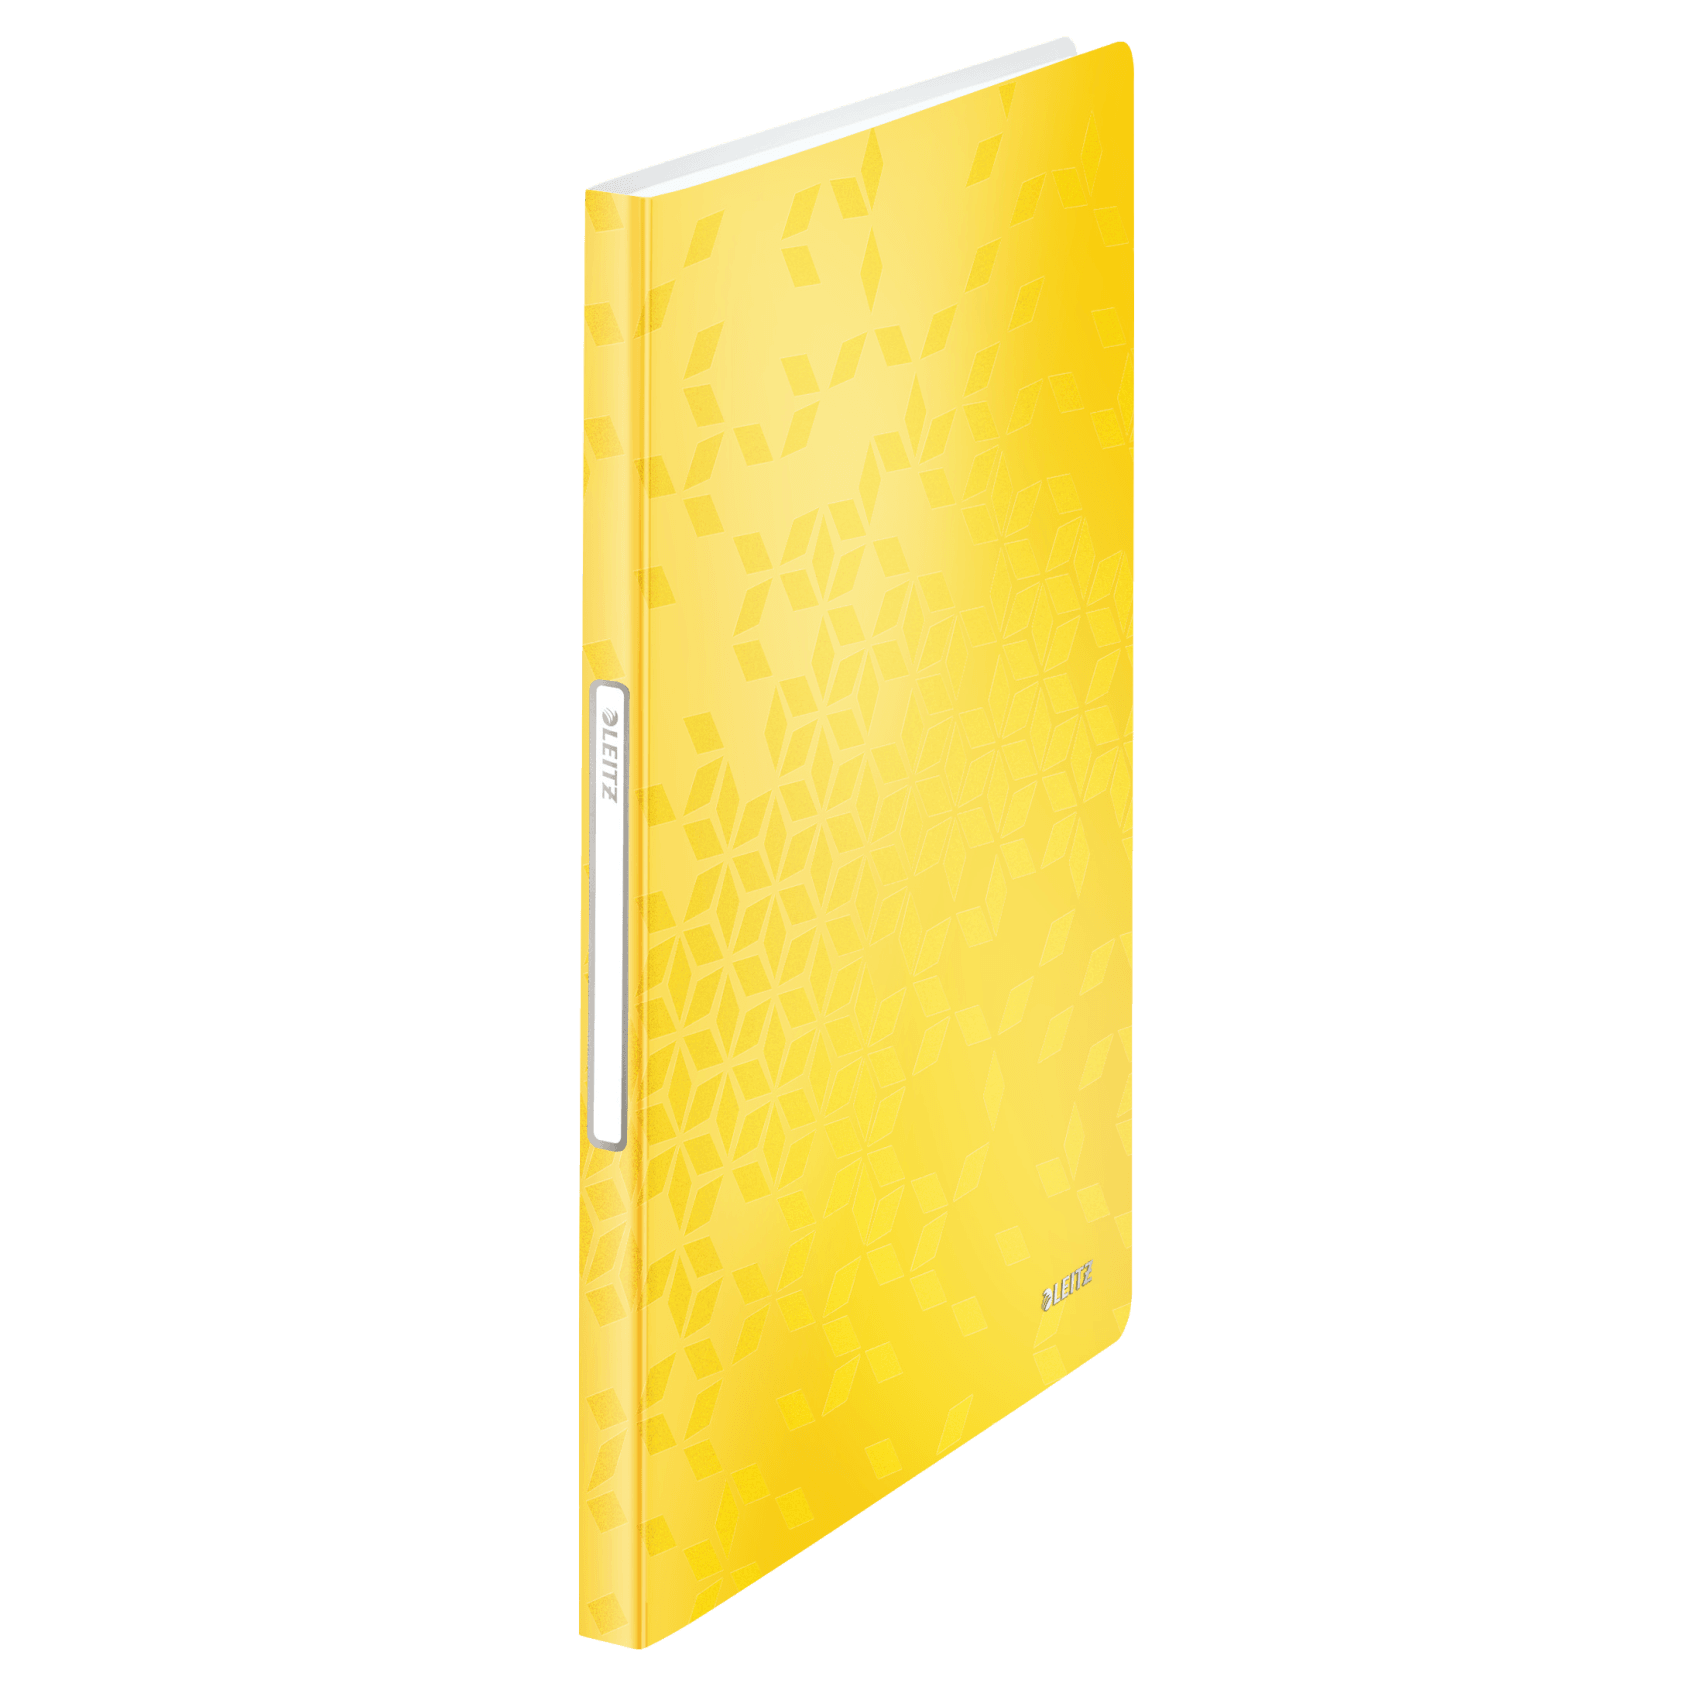 Katalogová kniha Leitz WOW, 40 kapes, žlutá